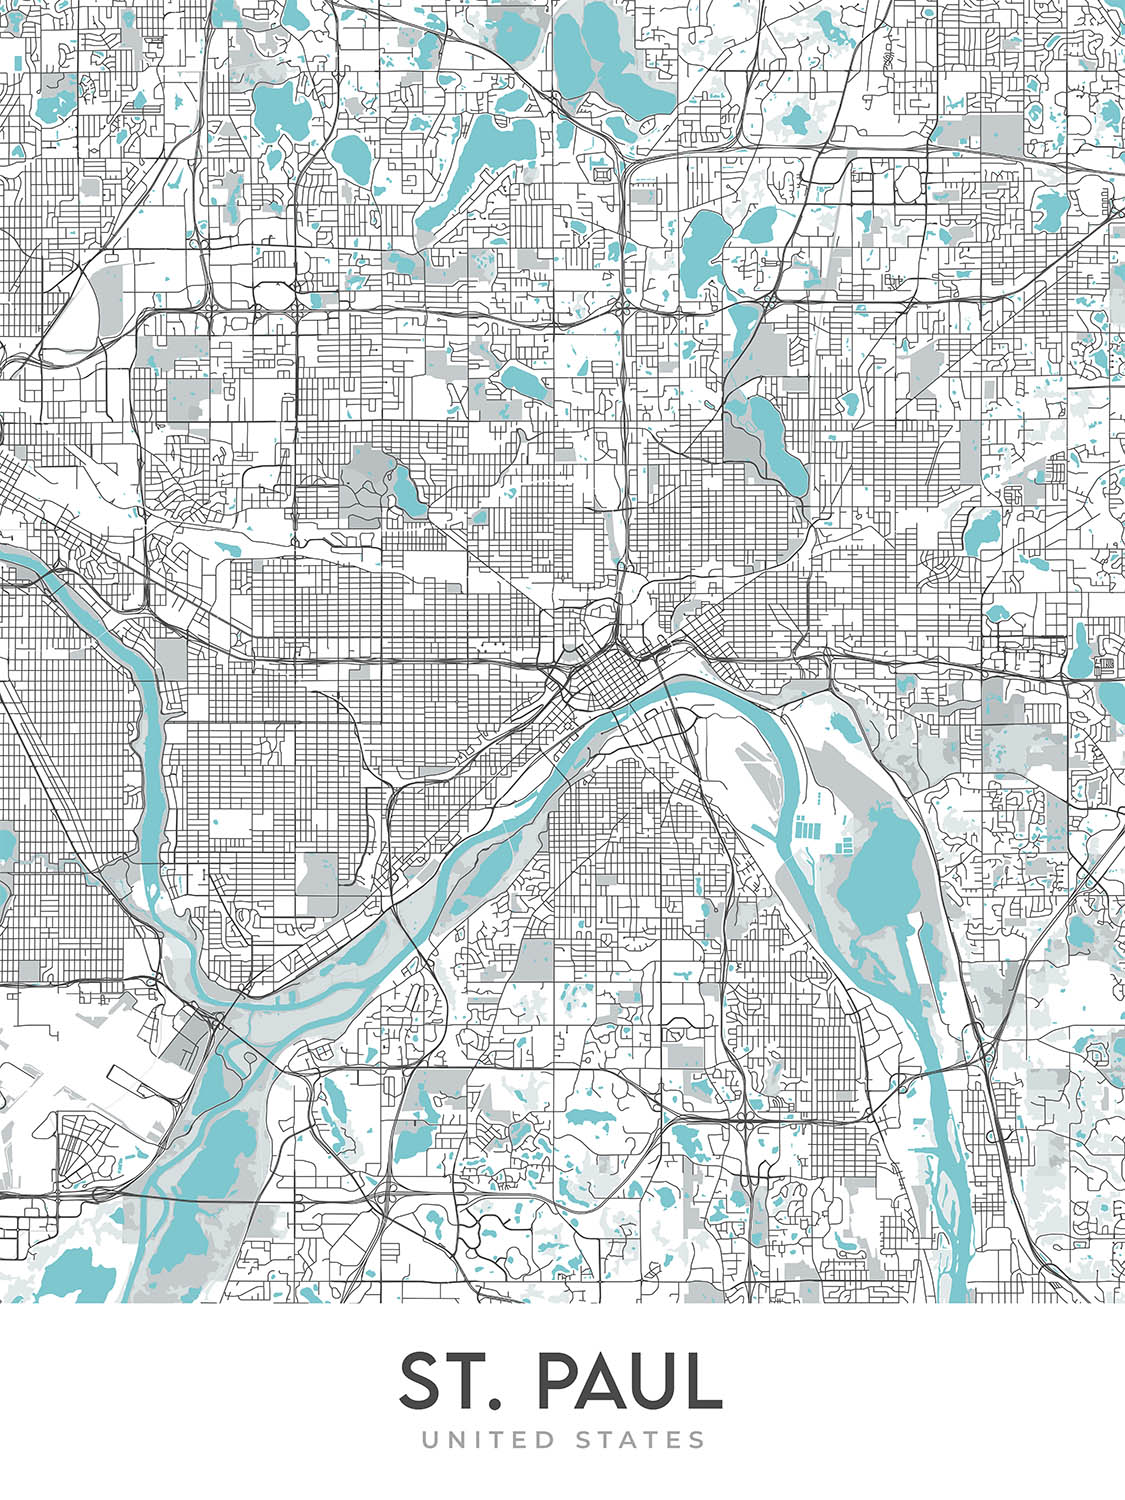 Plan de la ville moderne de St. Paul, MN : Como Park, Highland Park, Macalester College, Minnesota State Capitol, Mississippi River